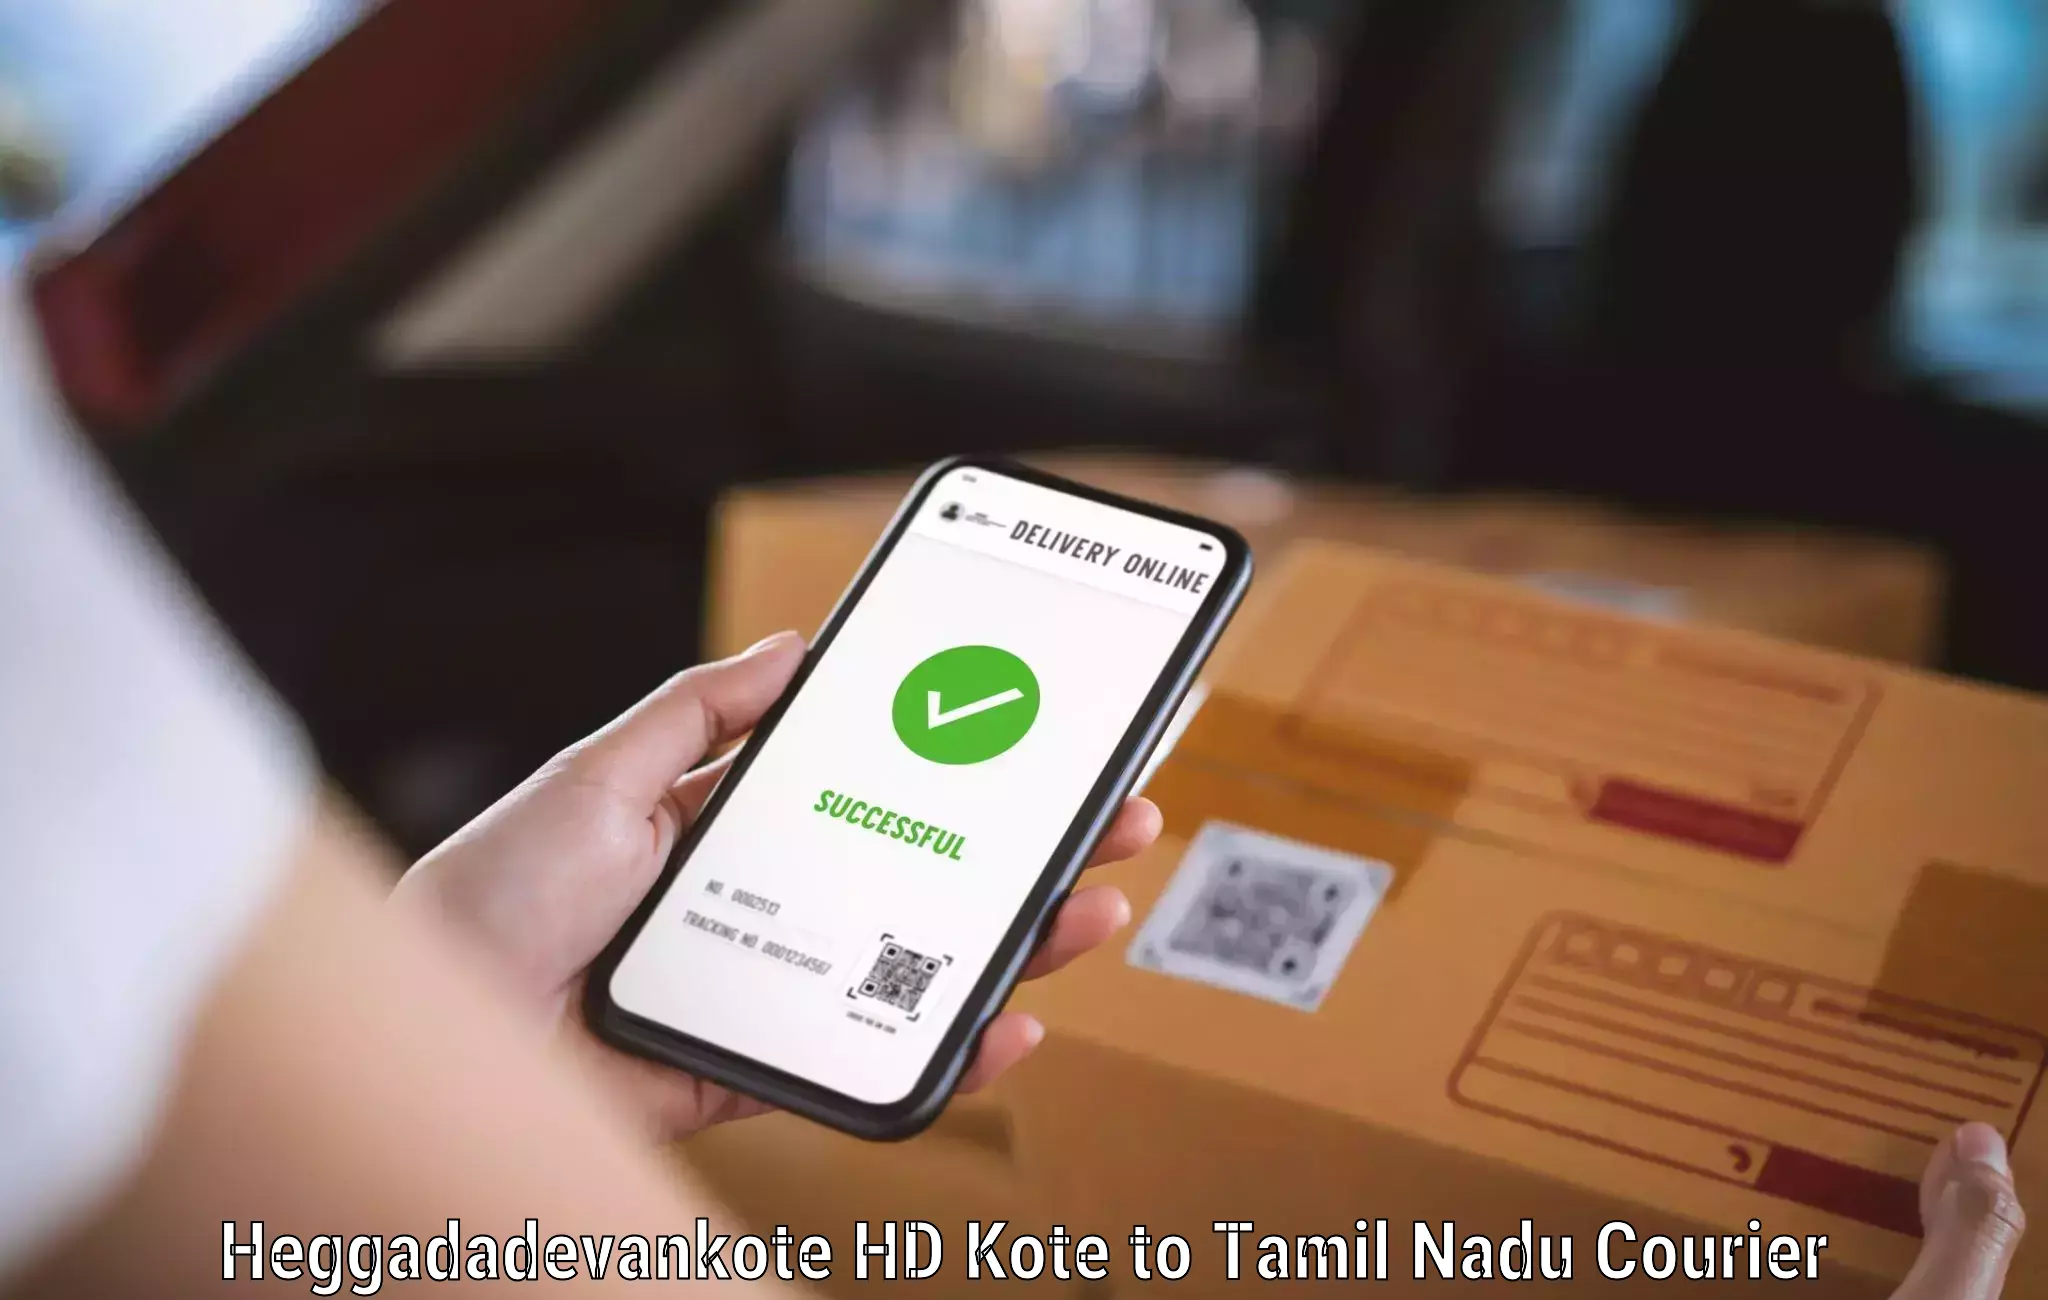 Bulk order courier Heggadadevankote HD Kote to Chennai